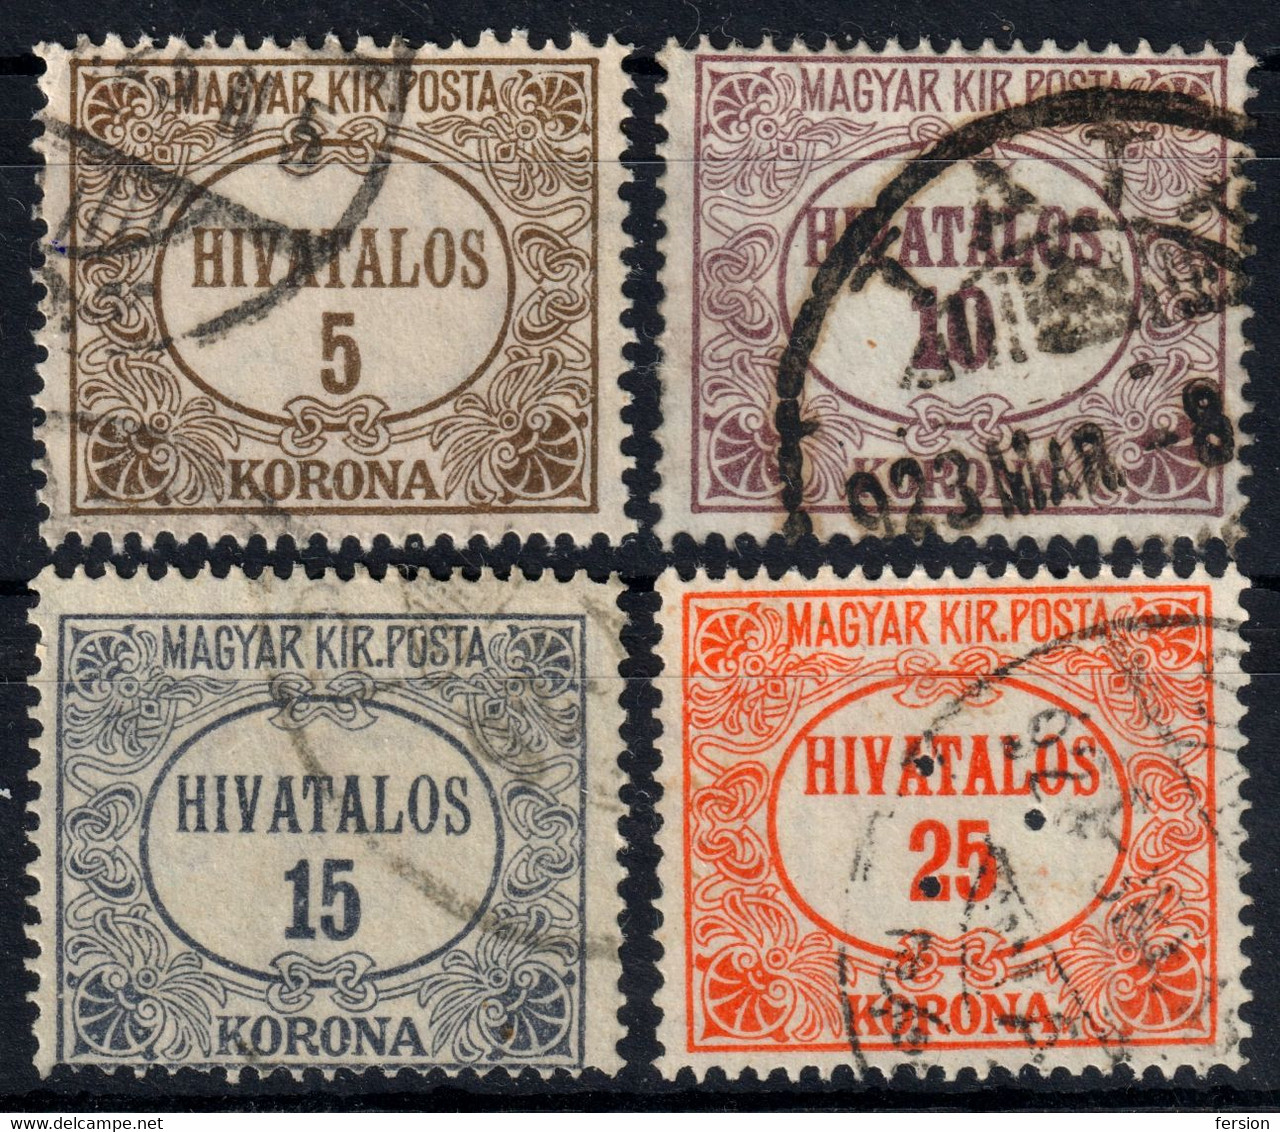 Official Dienstmarke 1922  Hungary - Used - Dienstmarken